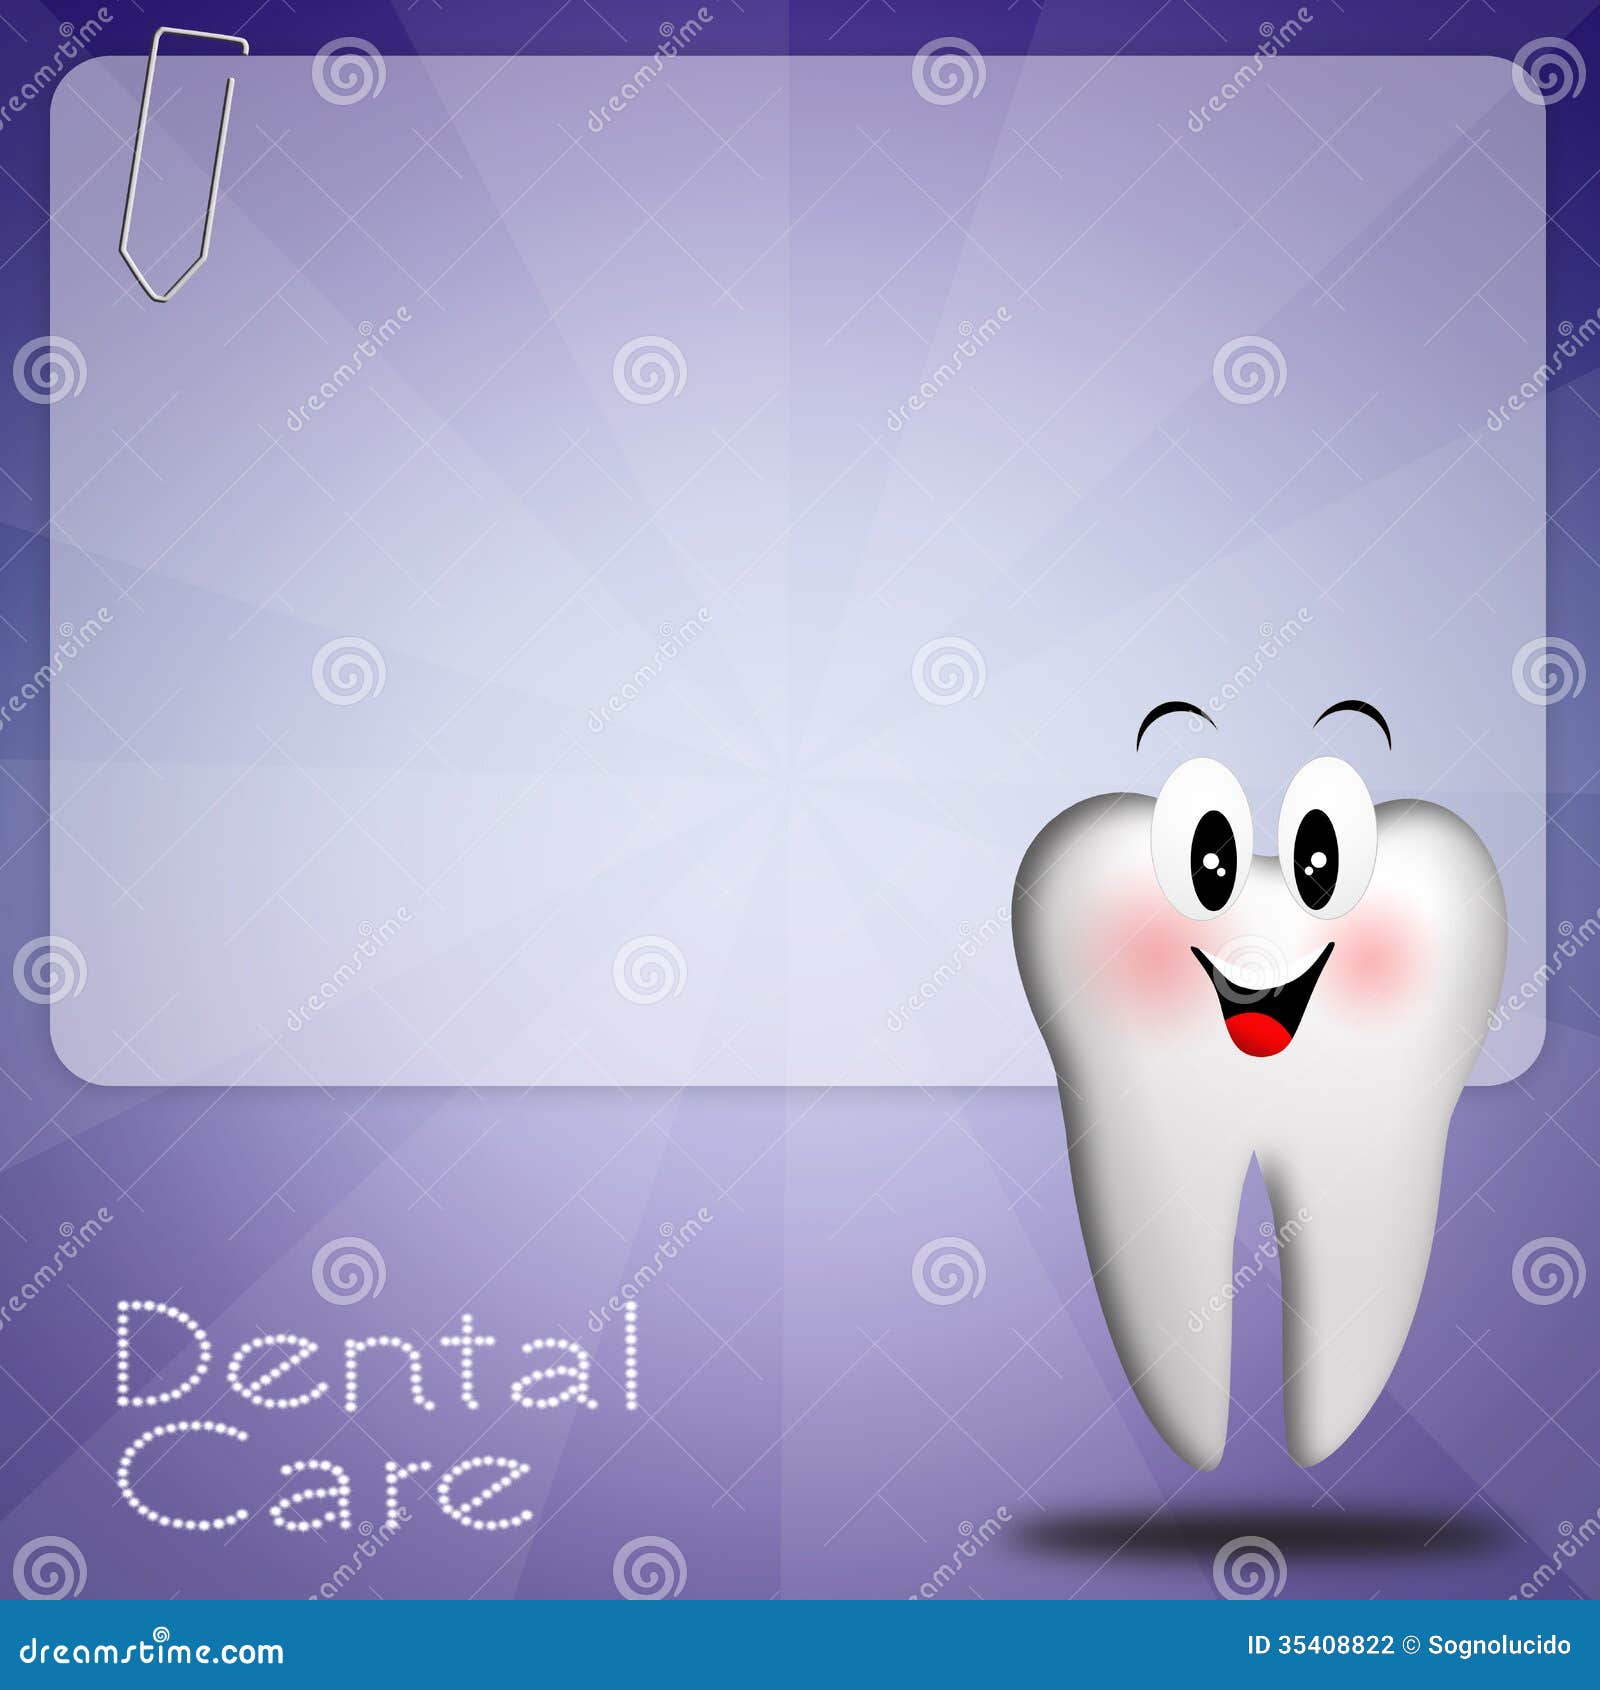 dental-care-illustration-background-tooth-35408822.jpg